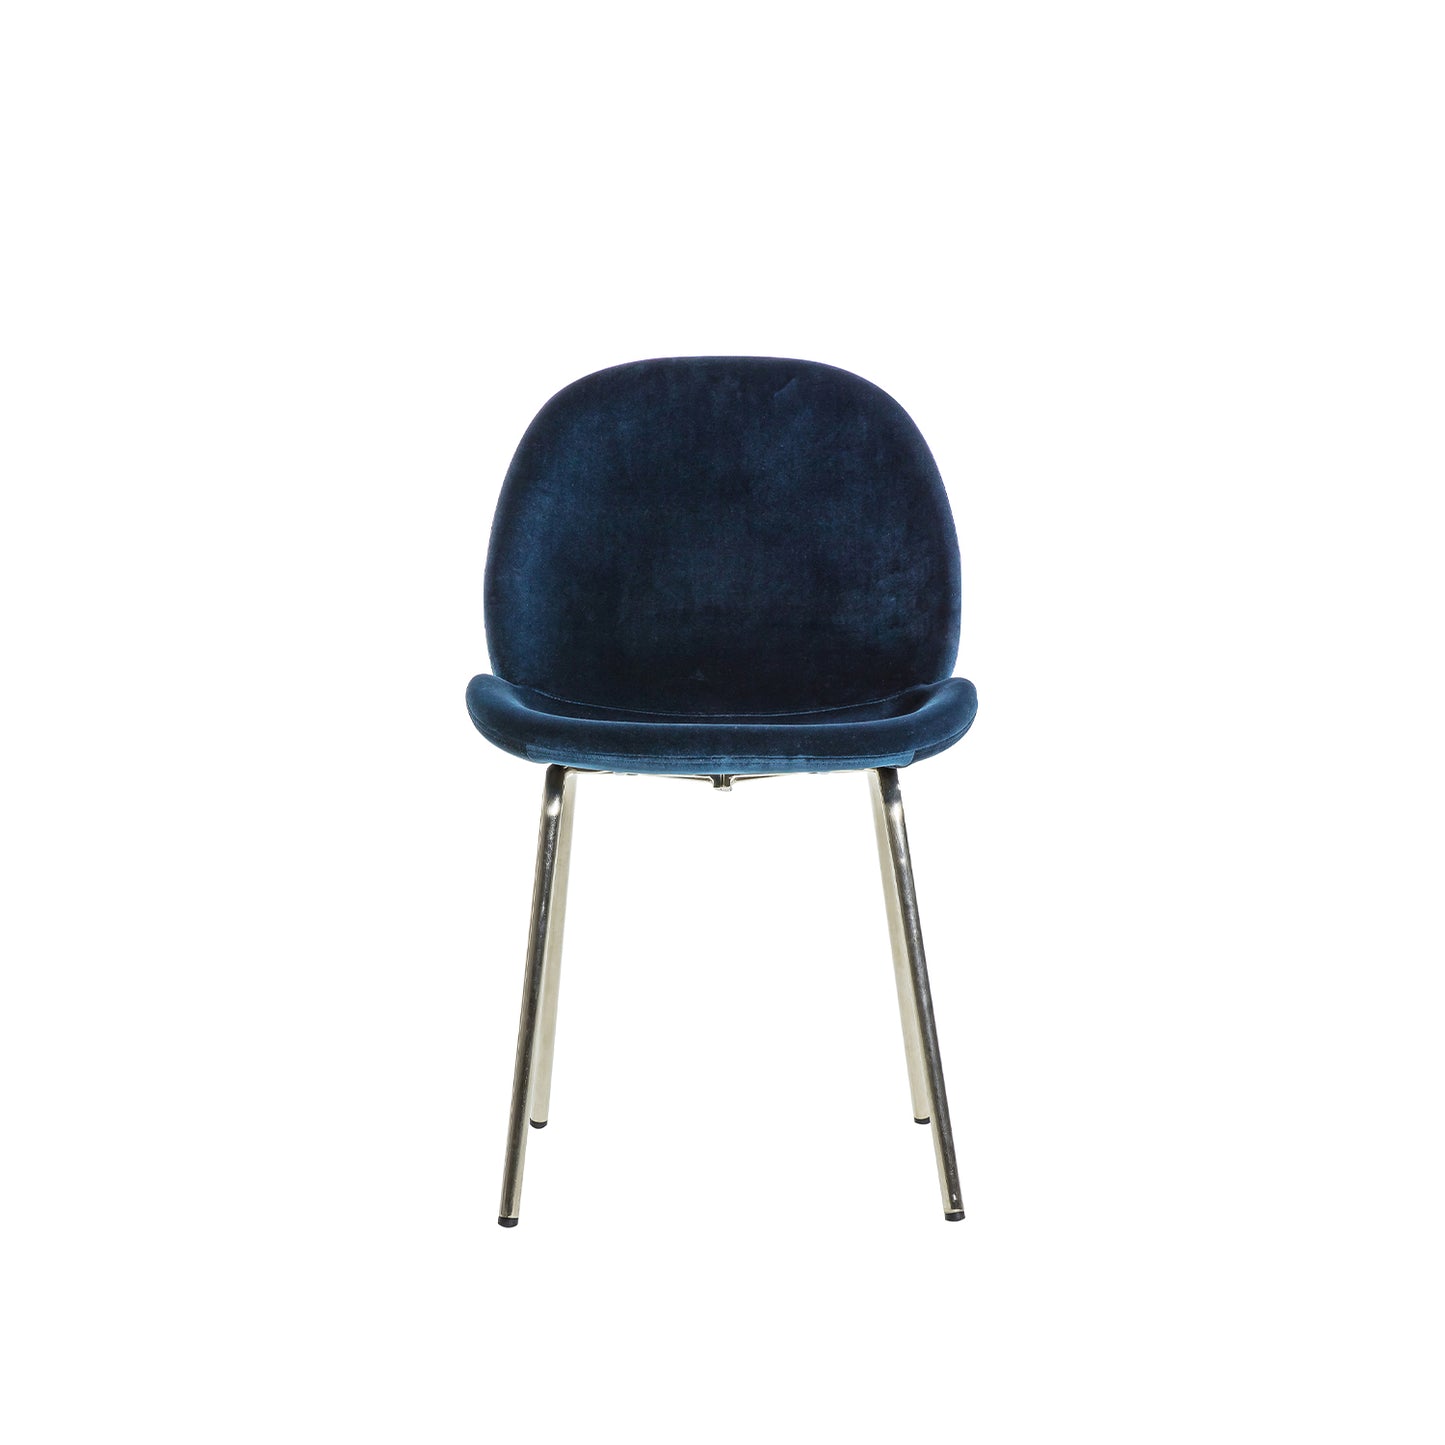 Levi Dining Chair - Navy Blue Velvet & Chrome